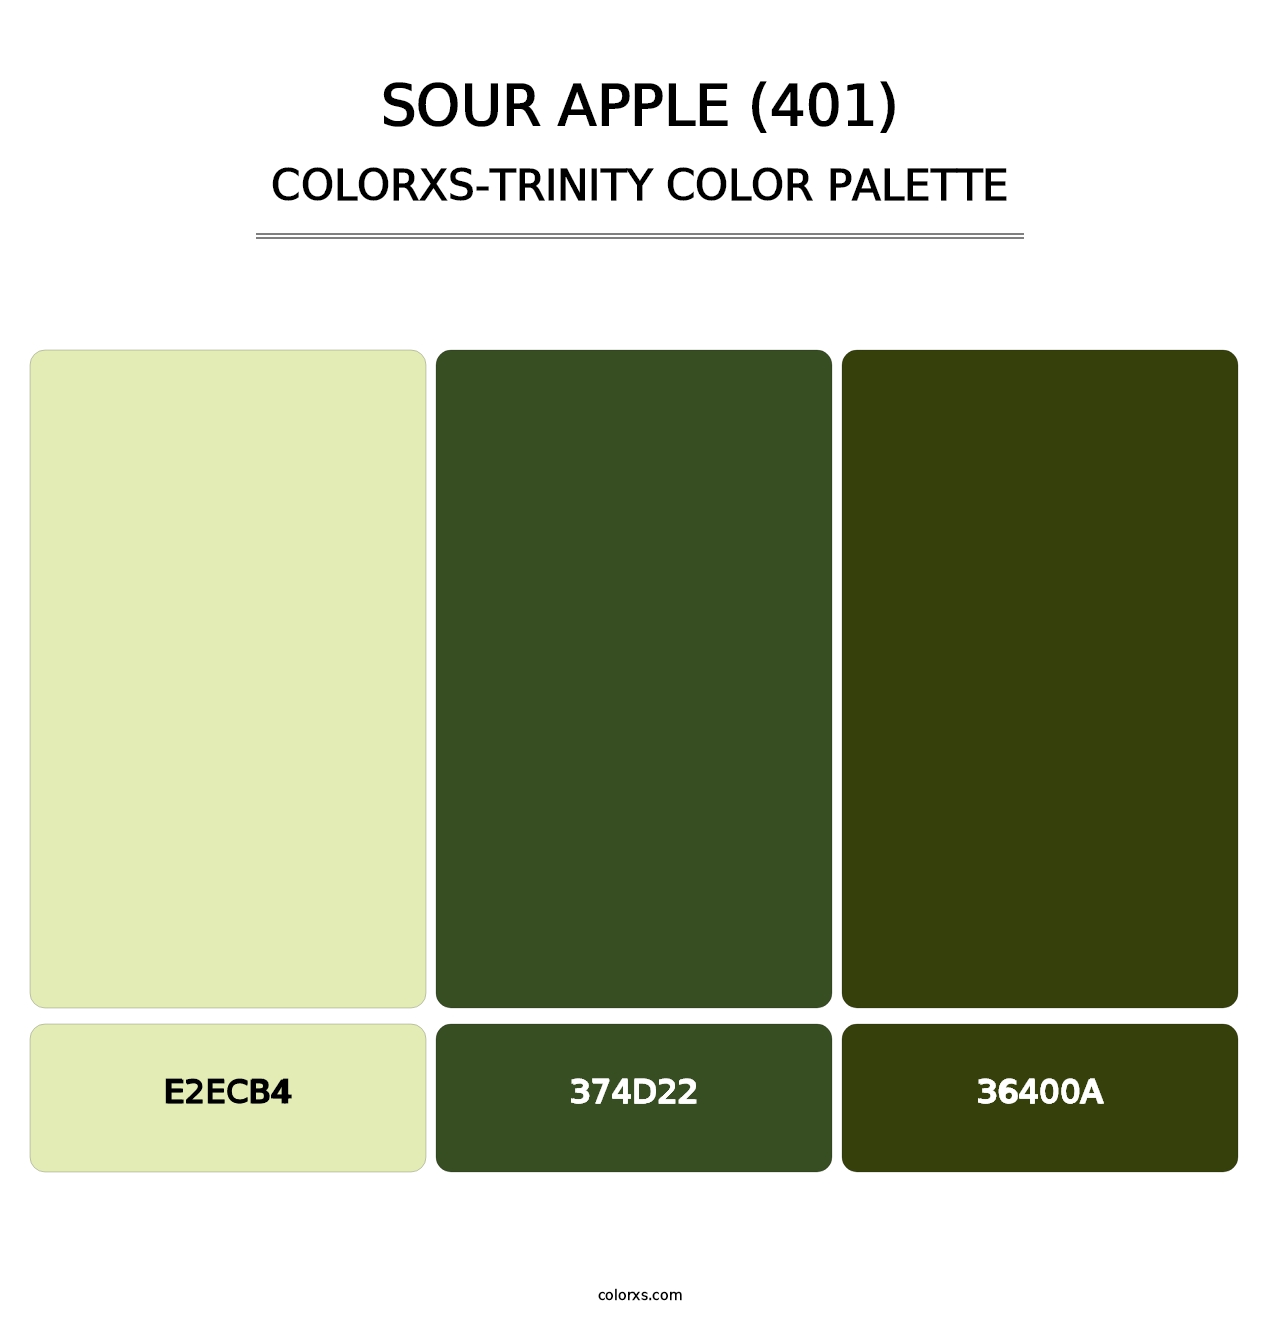 Sour Apple (401) - Colorxs Trinity Palette